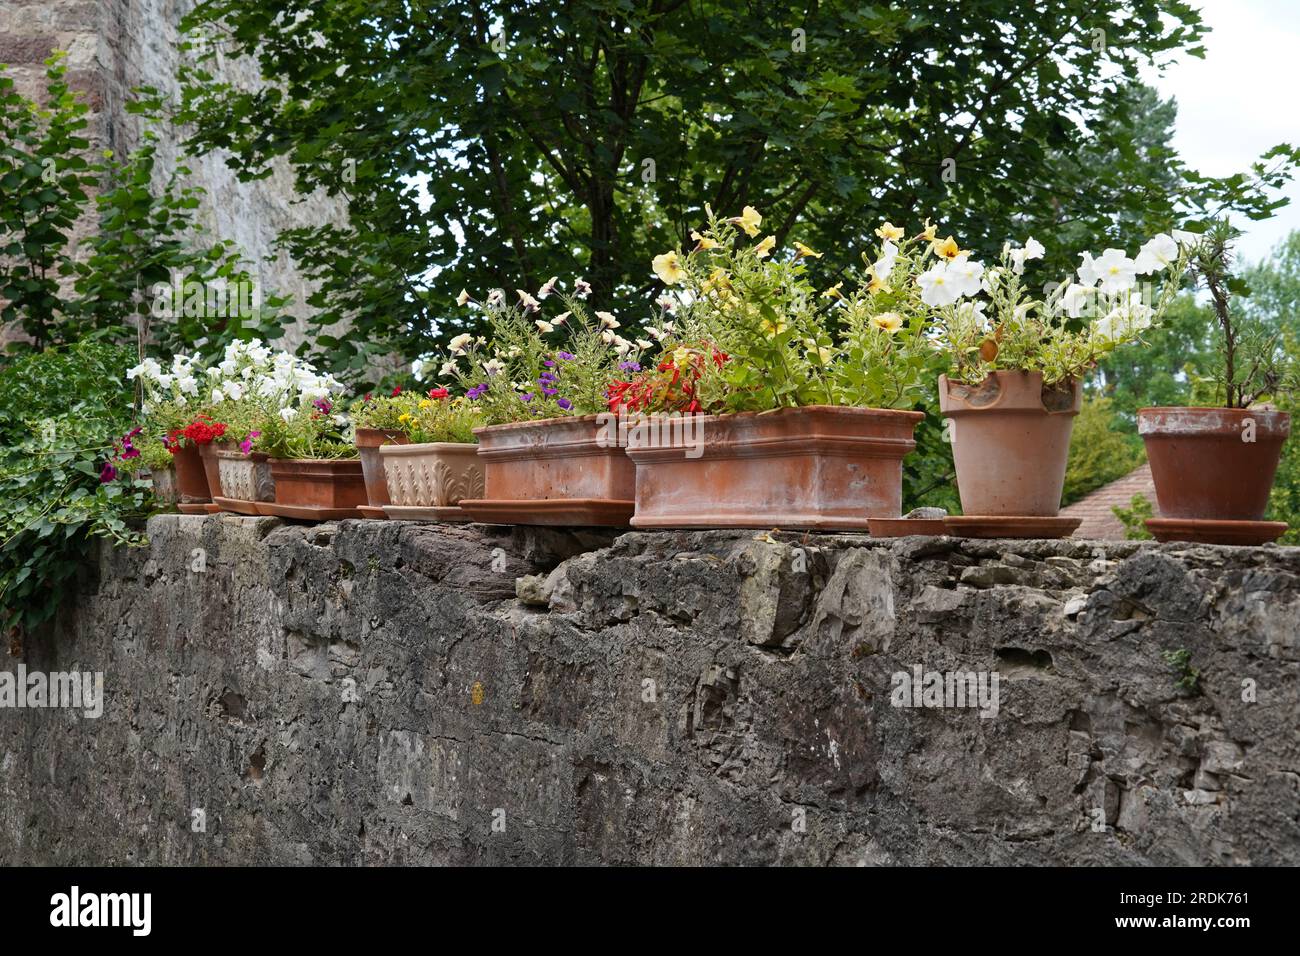 Vasi in terracotta a forma cilindrica e cuboidale con fiori di varie specie posti su una spessa parete di pietra circostante. Foto Stock